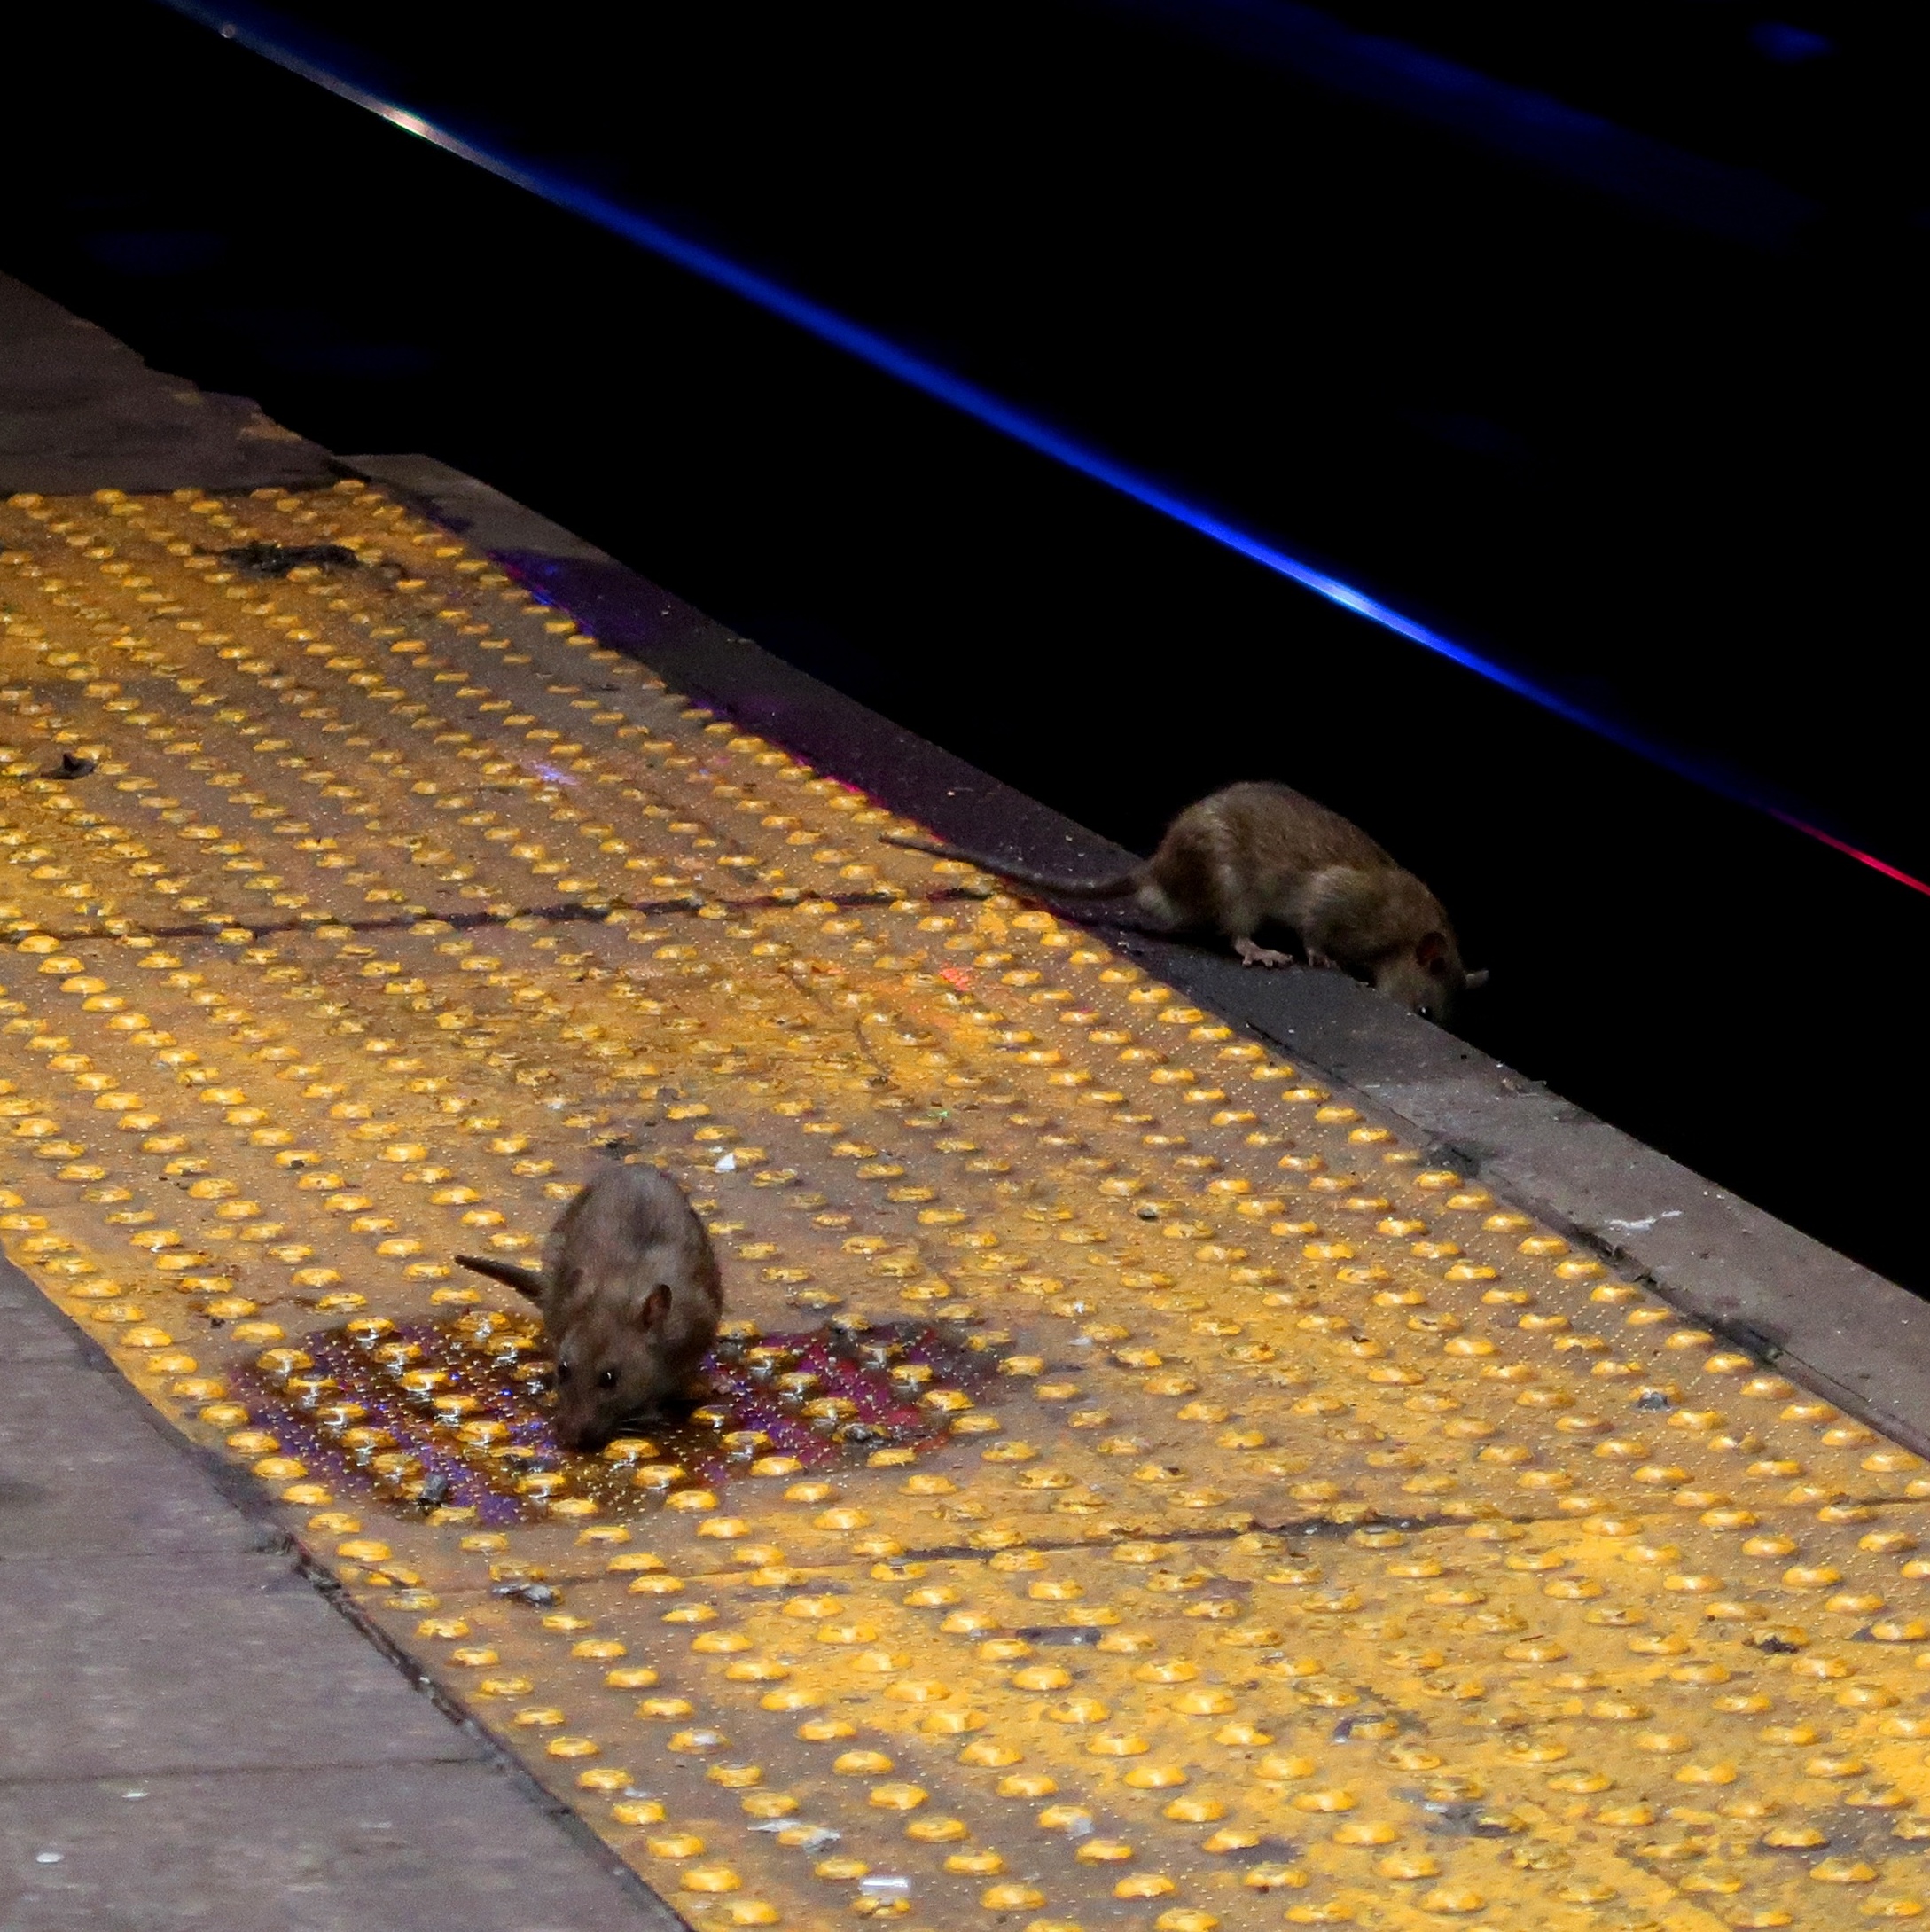 Comendo com ratos': por que Nova York está sofrendo com invasão de roedores  - BBC News Brasil